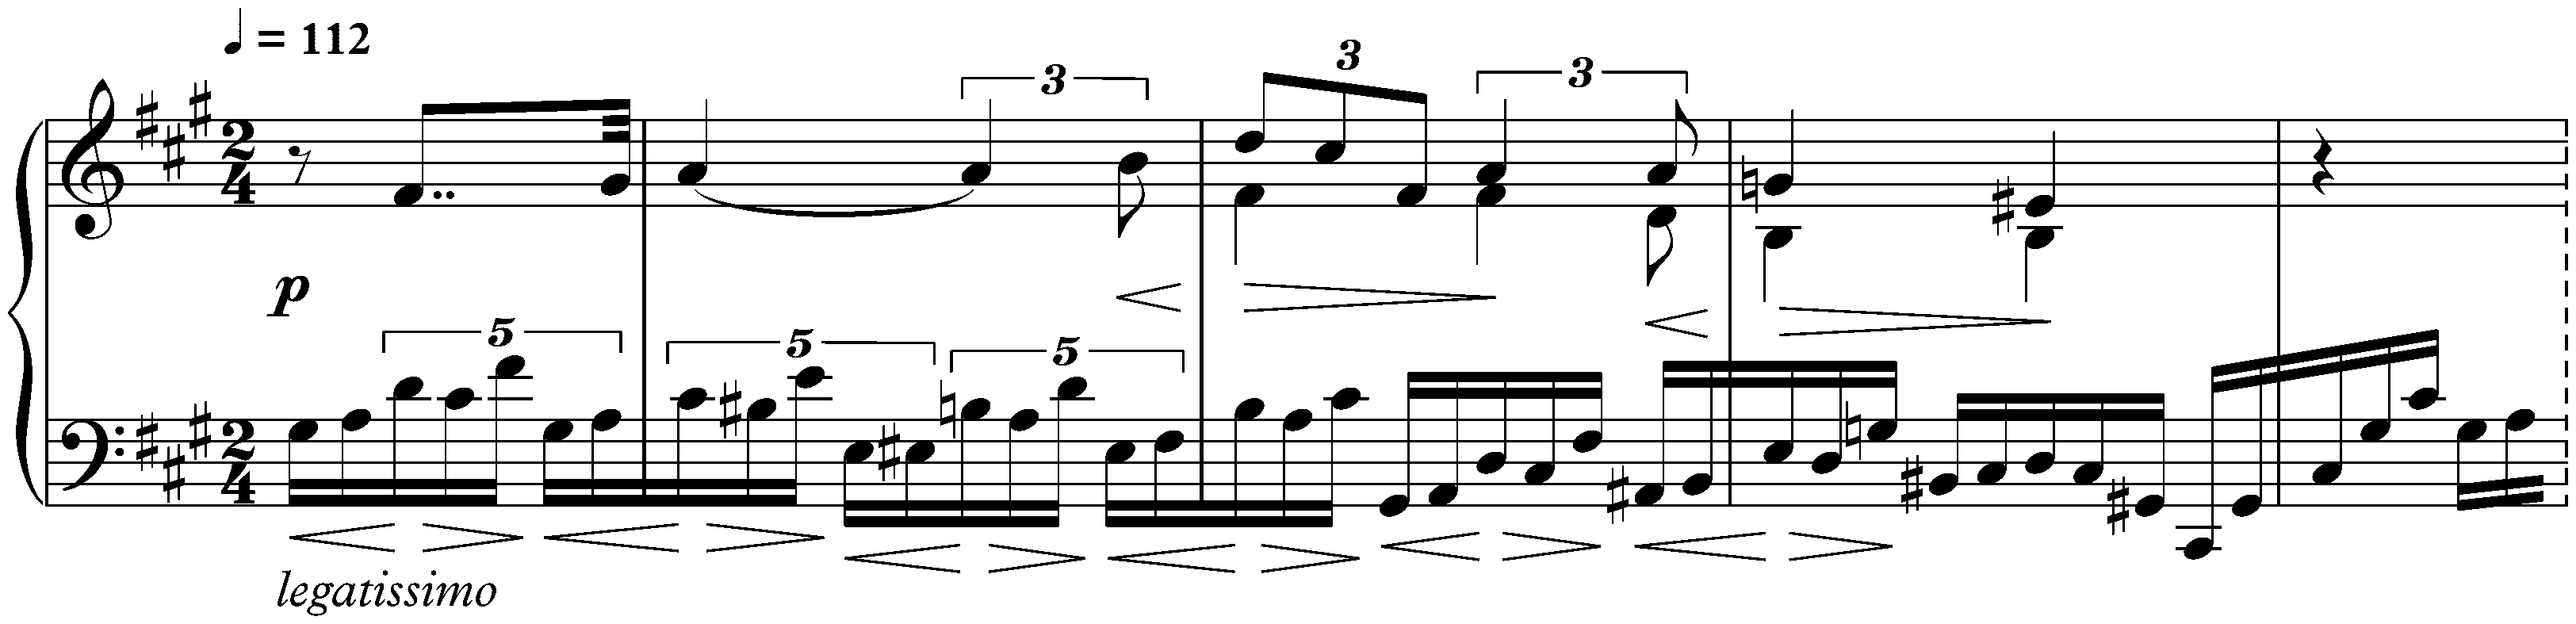 Huit Études, op. 42; 2. F-sharp minor